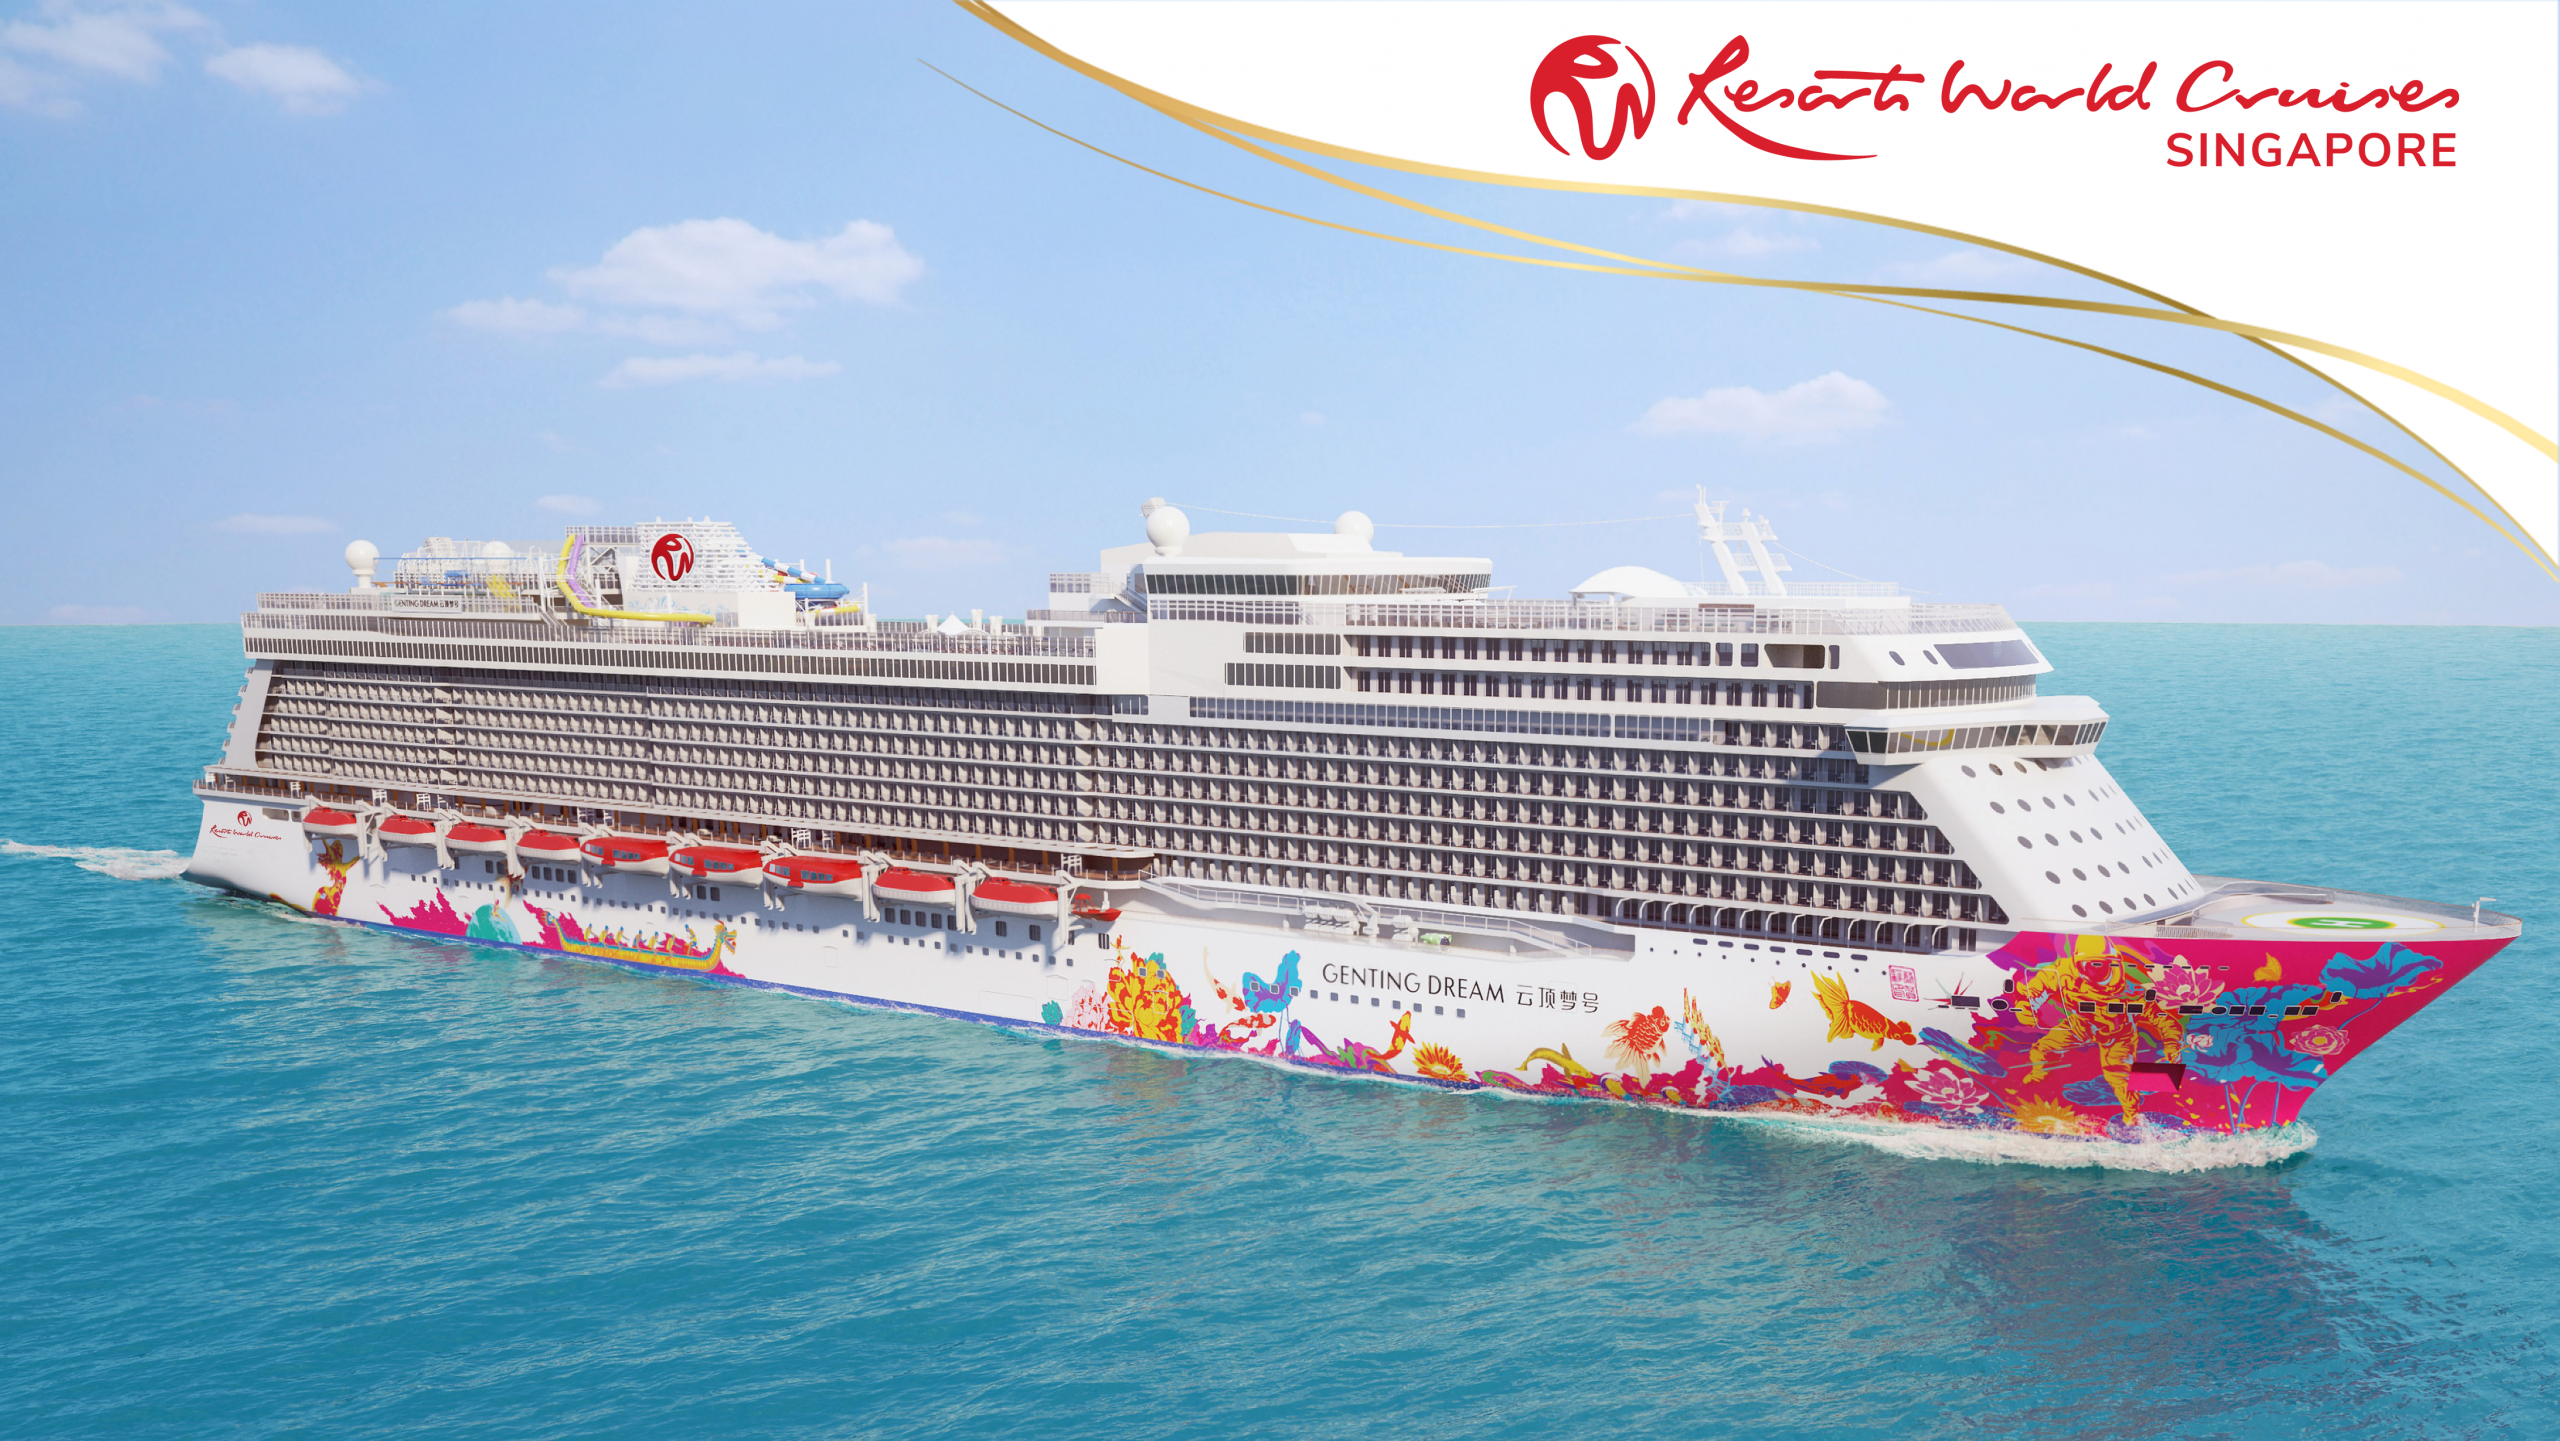 resort world cruise discount code